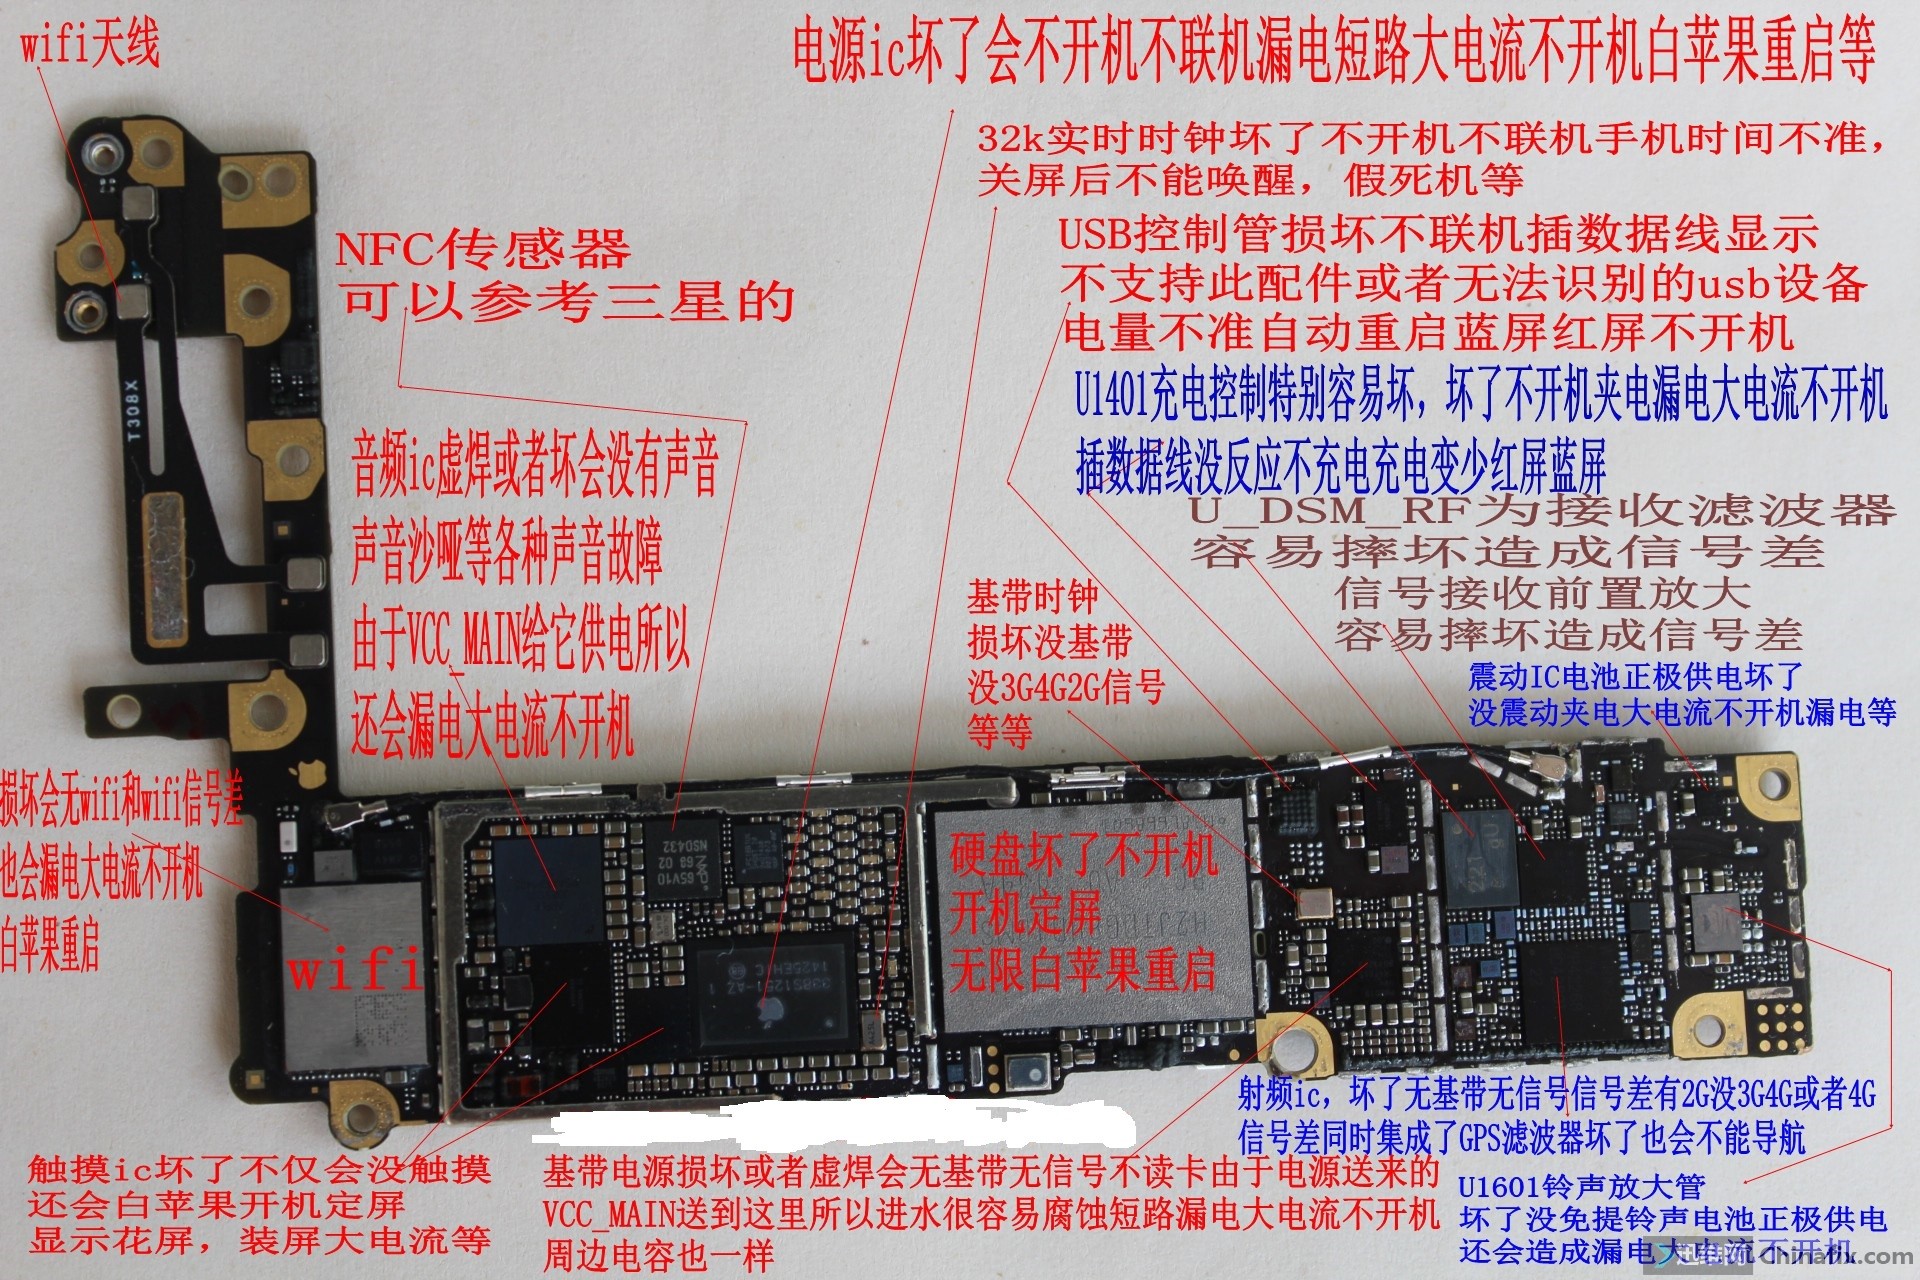 图解iPhone 6拆机换电池过程 | Carl Zhang's Blog